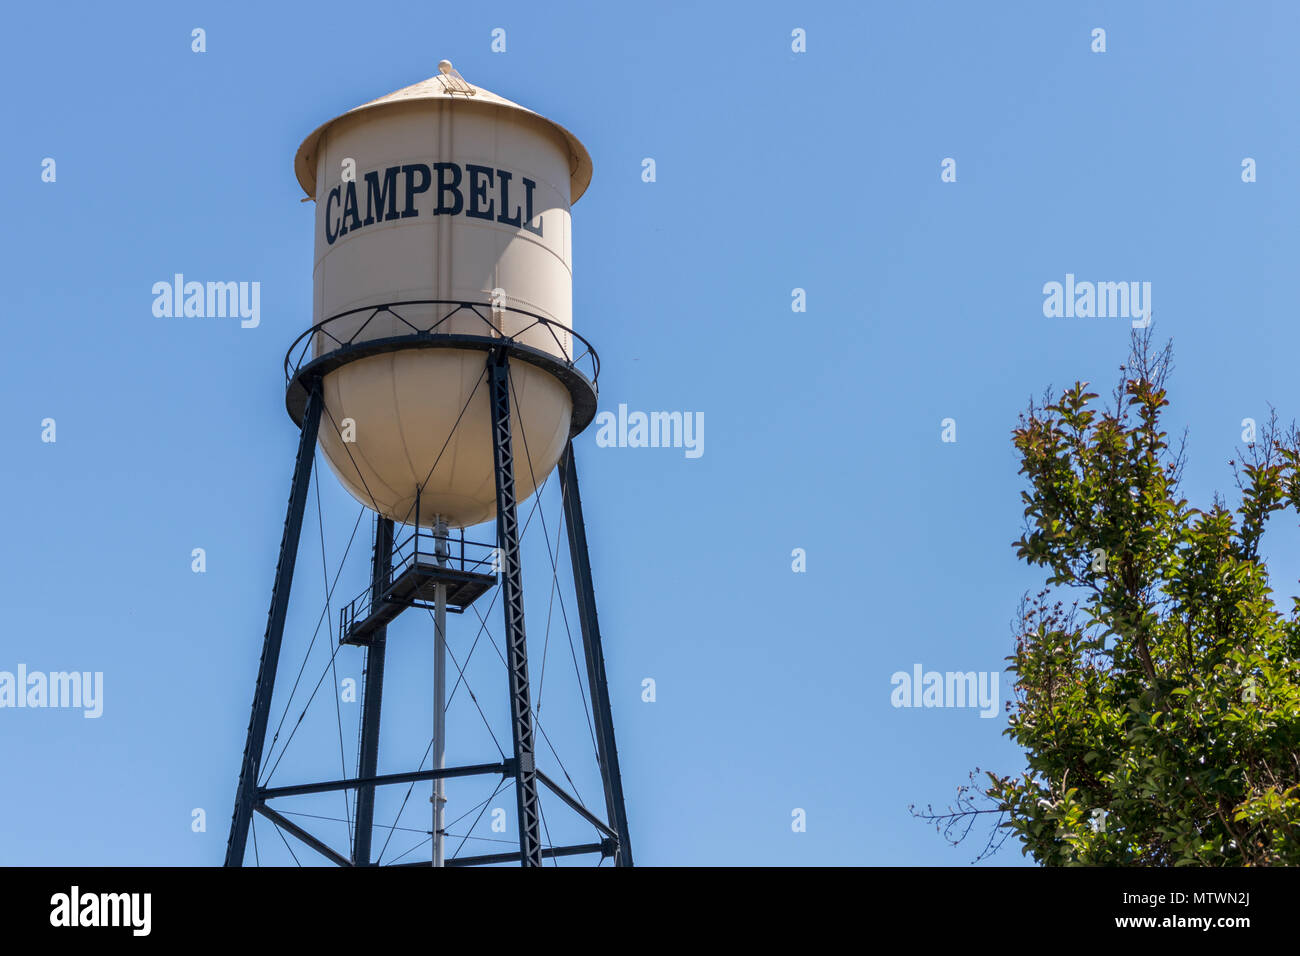 Campbell Wasserturm gegen einen blauen Sommerhimmel. Stadt Campbell, Nord Kalifornien, USA. Stockfoto